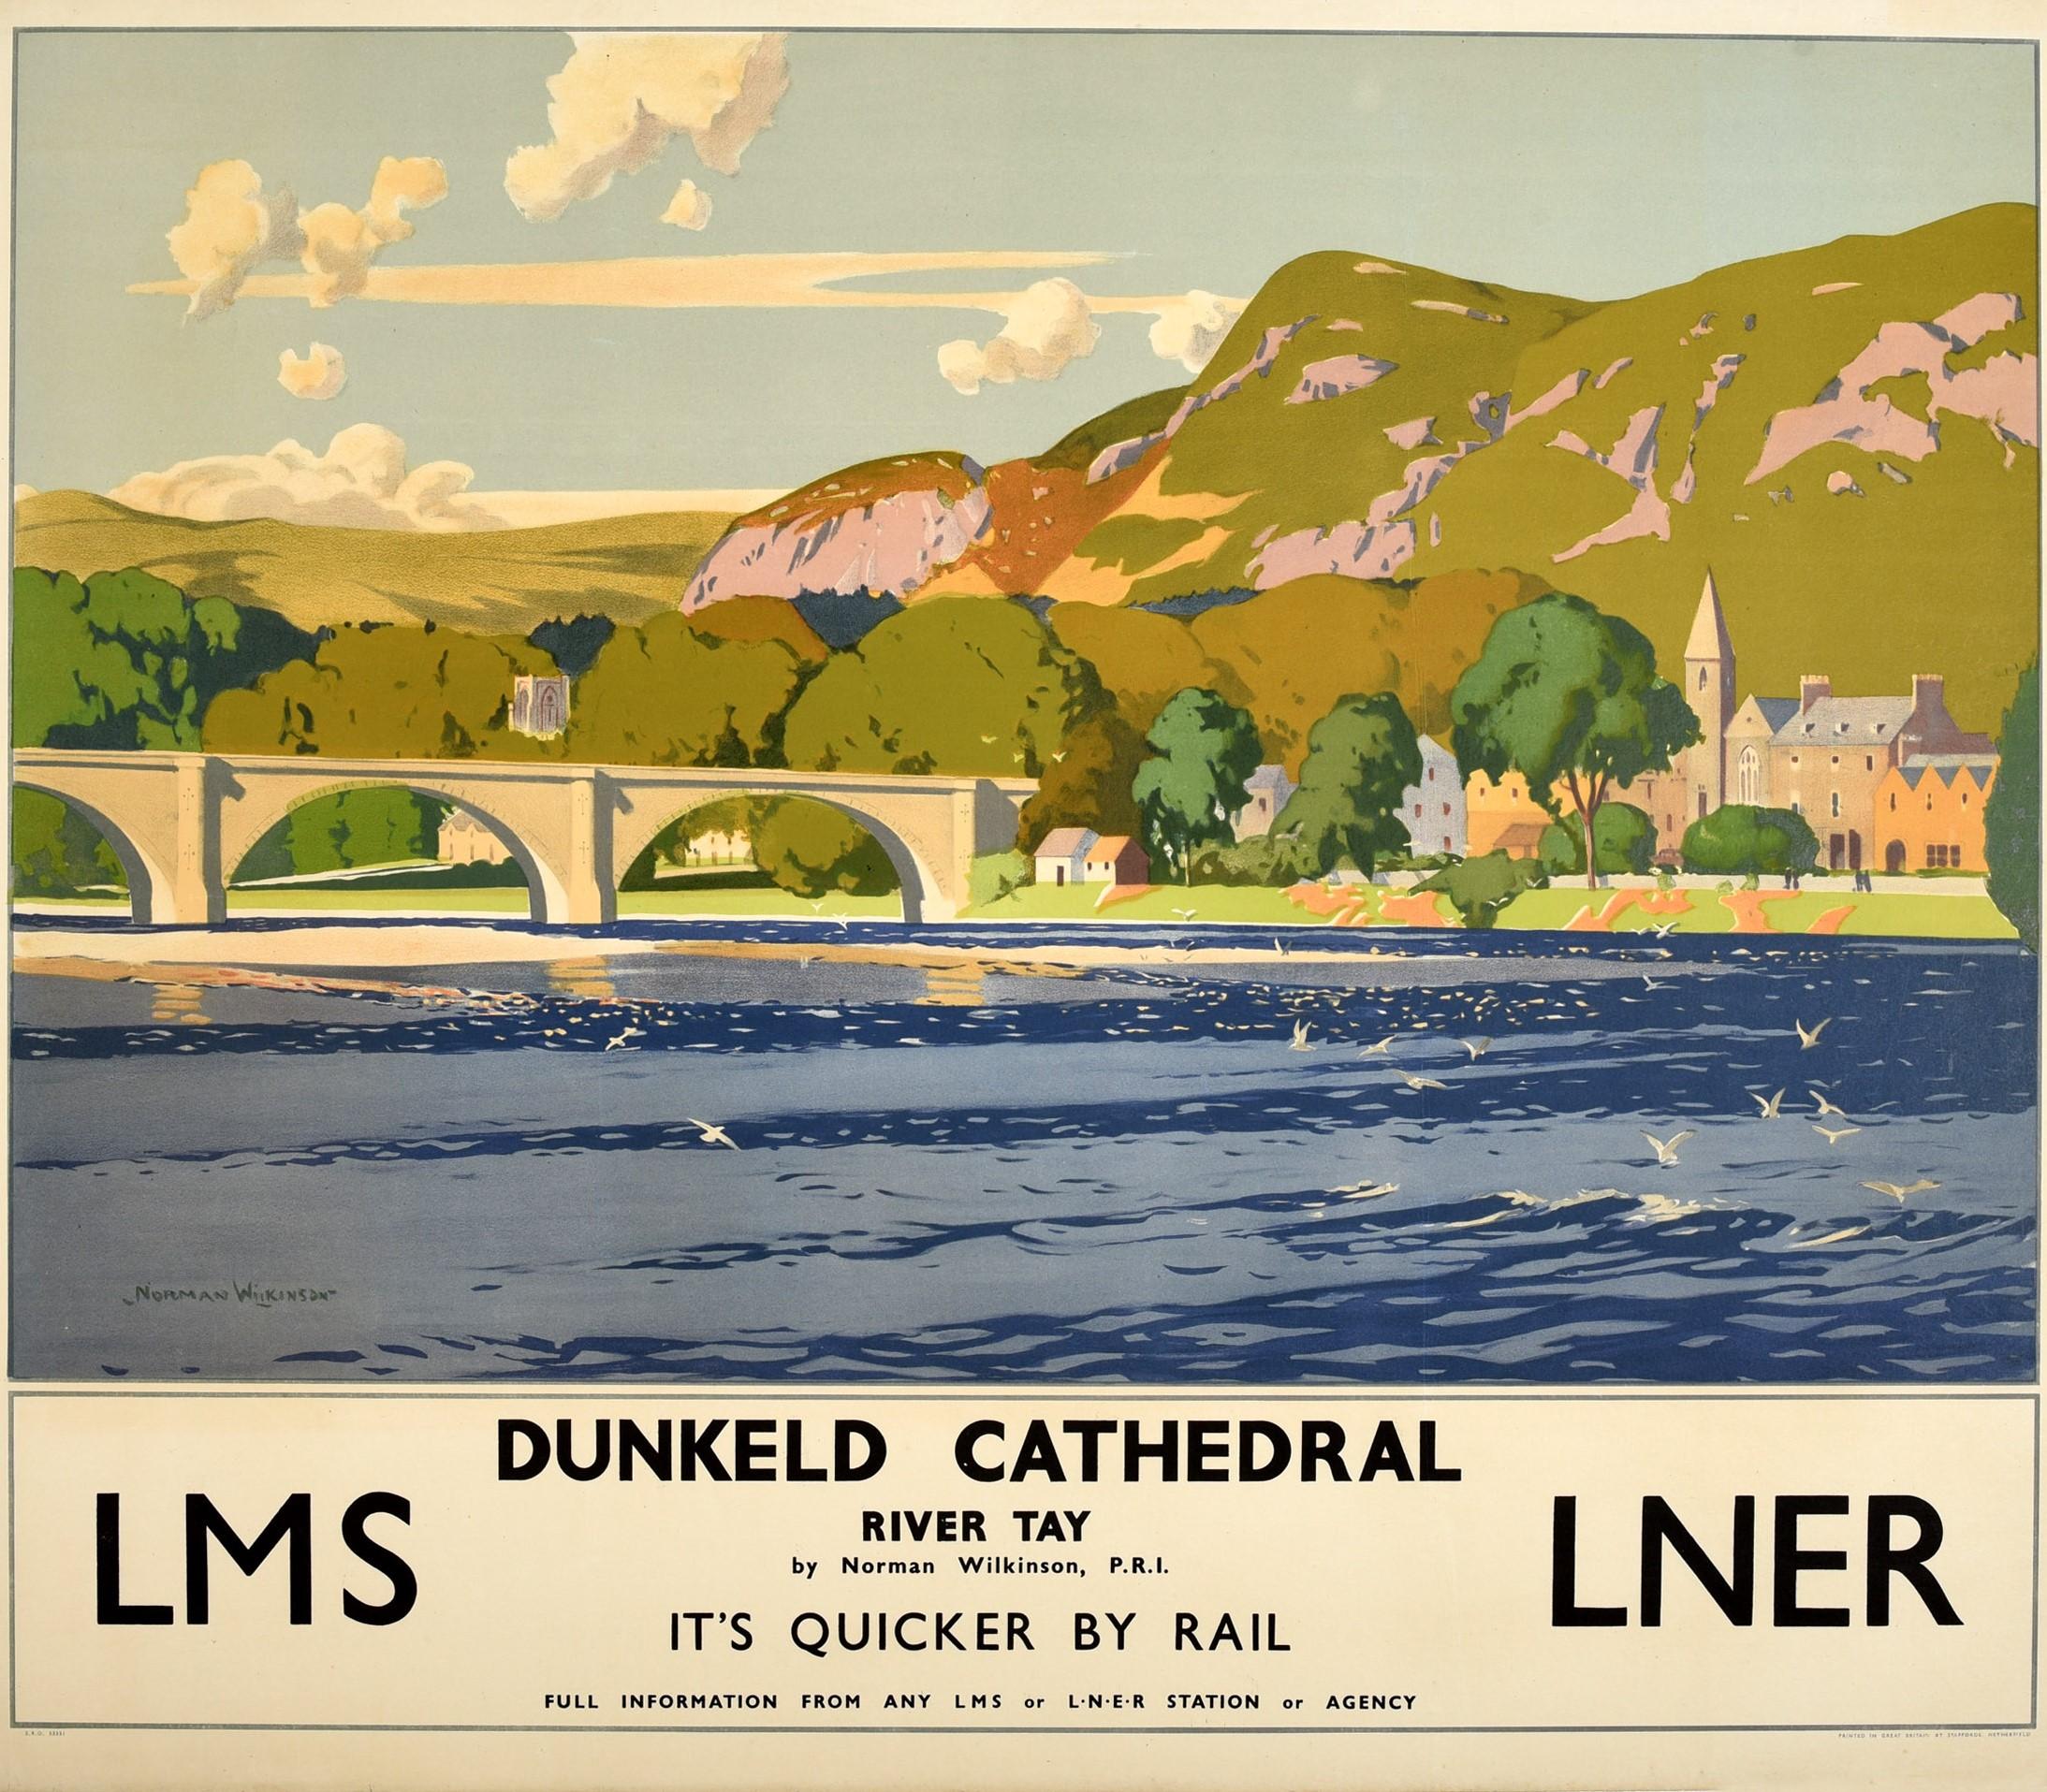 British Original Vintage Poster Dunkeld Cathedral River Tay LMS LNER Railway Travel Art For Sale